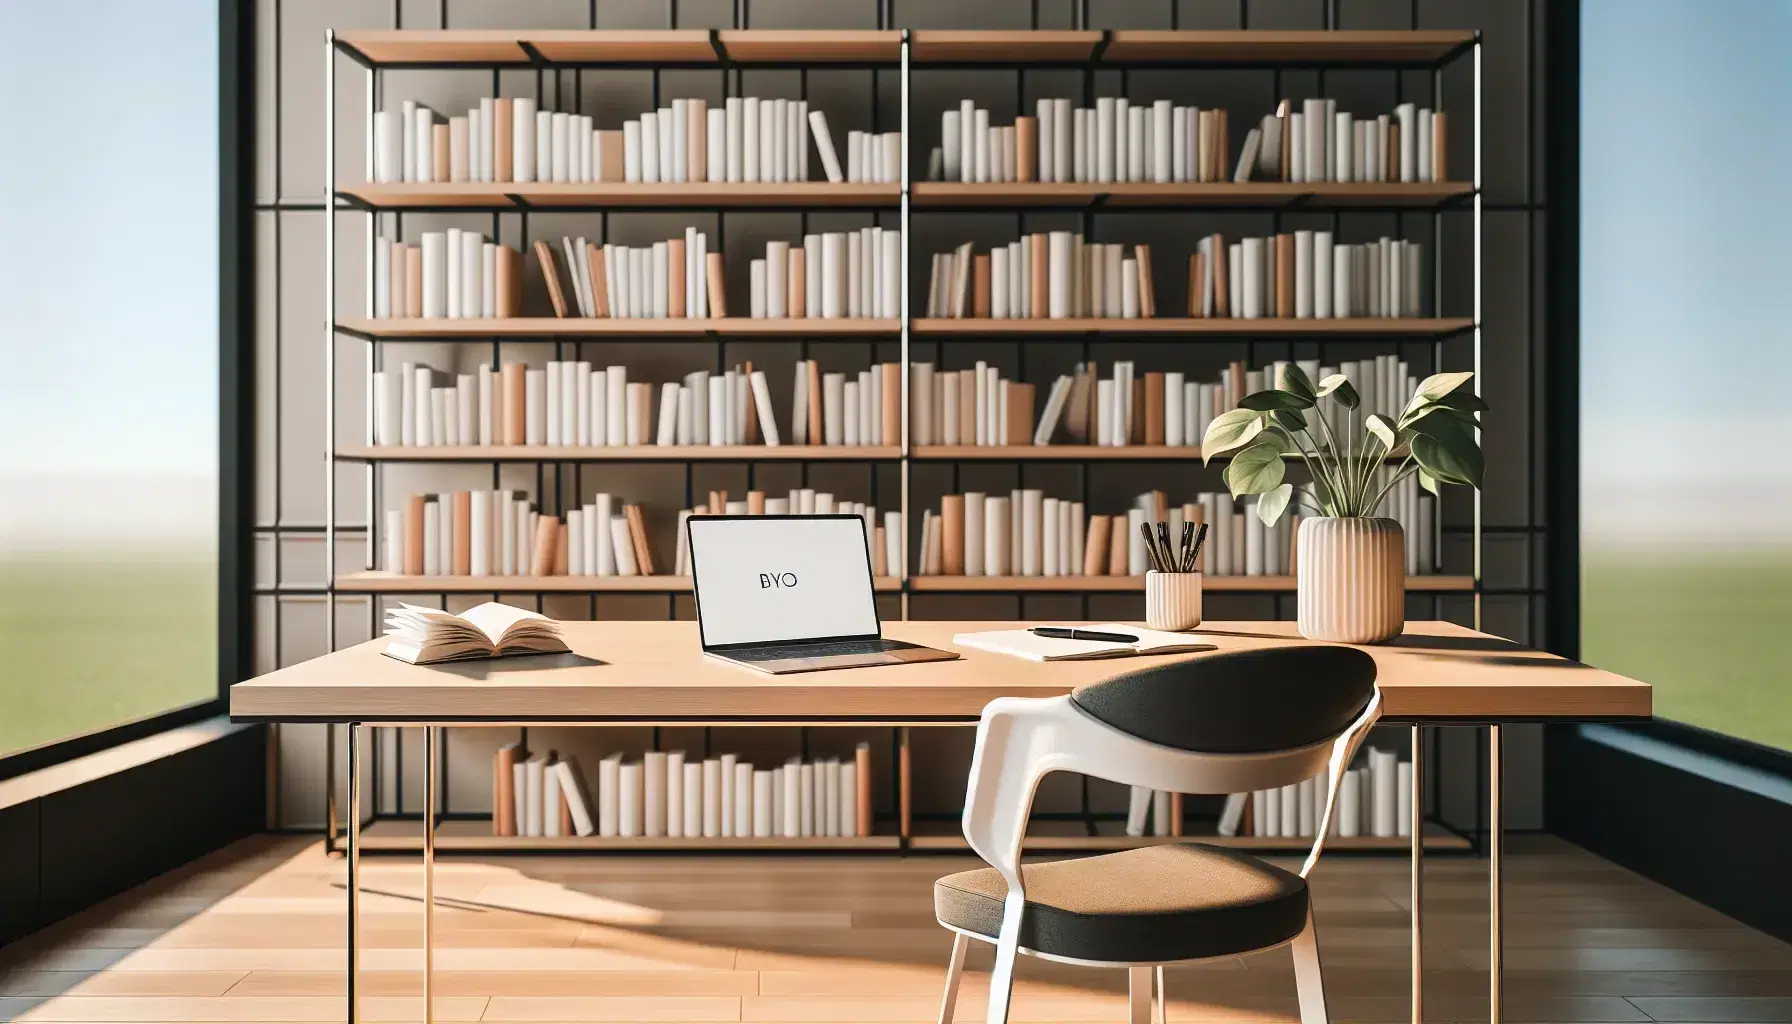 Biblioteca moderna y luminosa con estanterías de madera llenas de libros, mesa de estudio con laptop y cuaderno en blanco, silla ergonómica y planta verde.